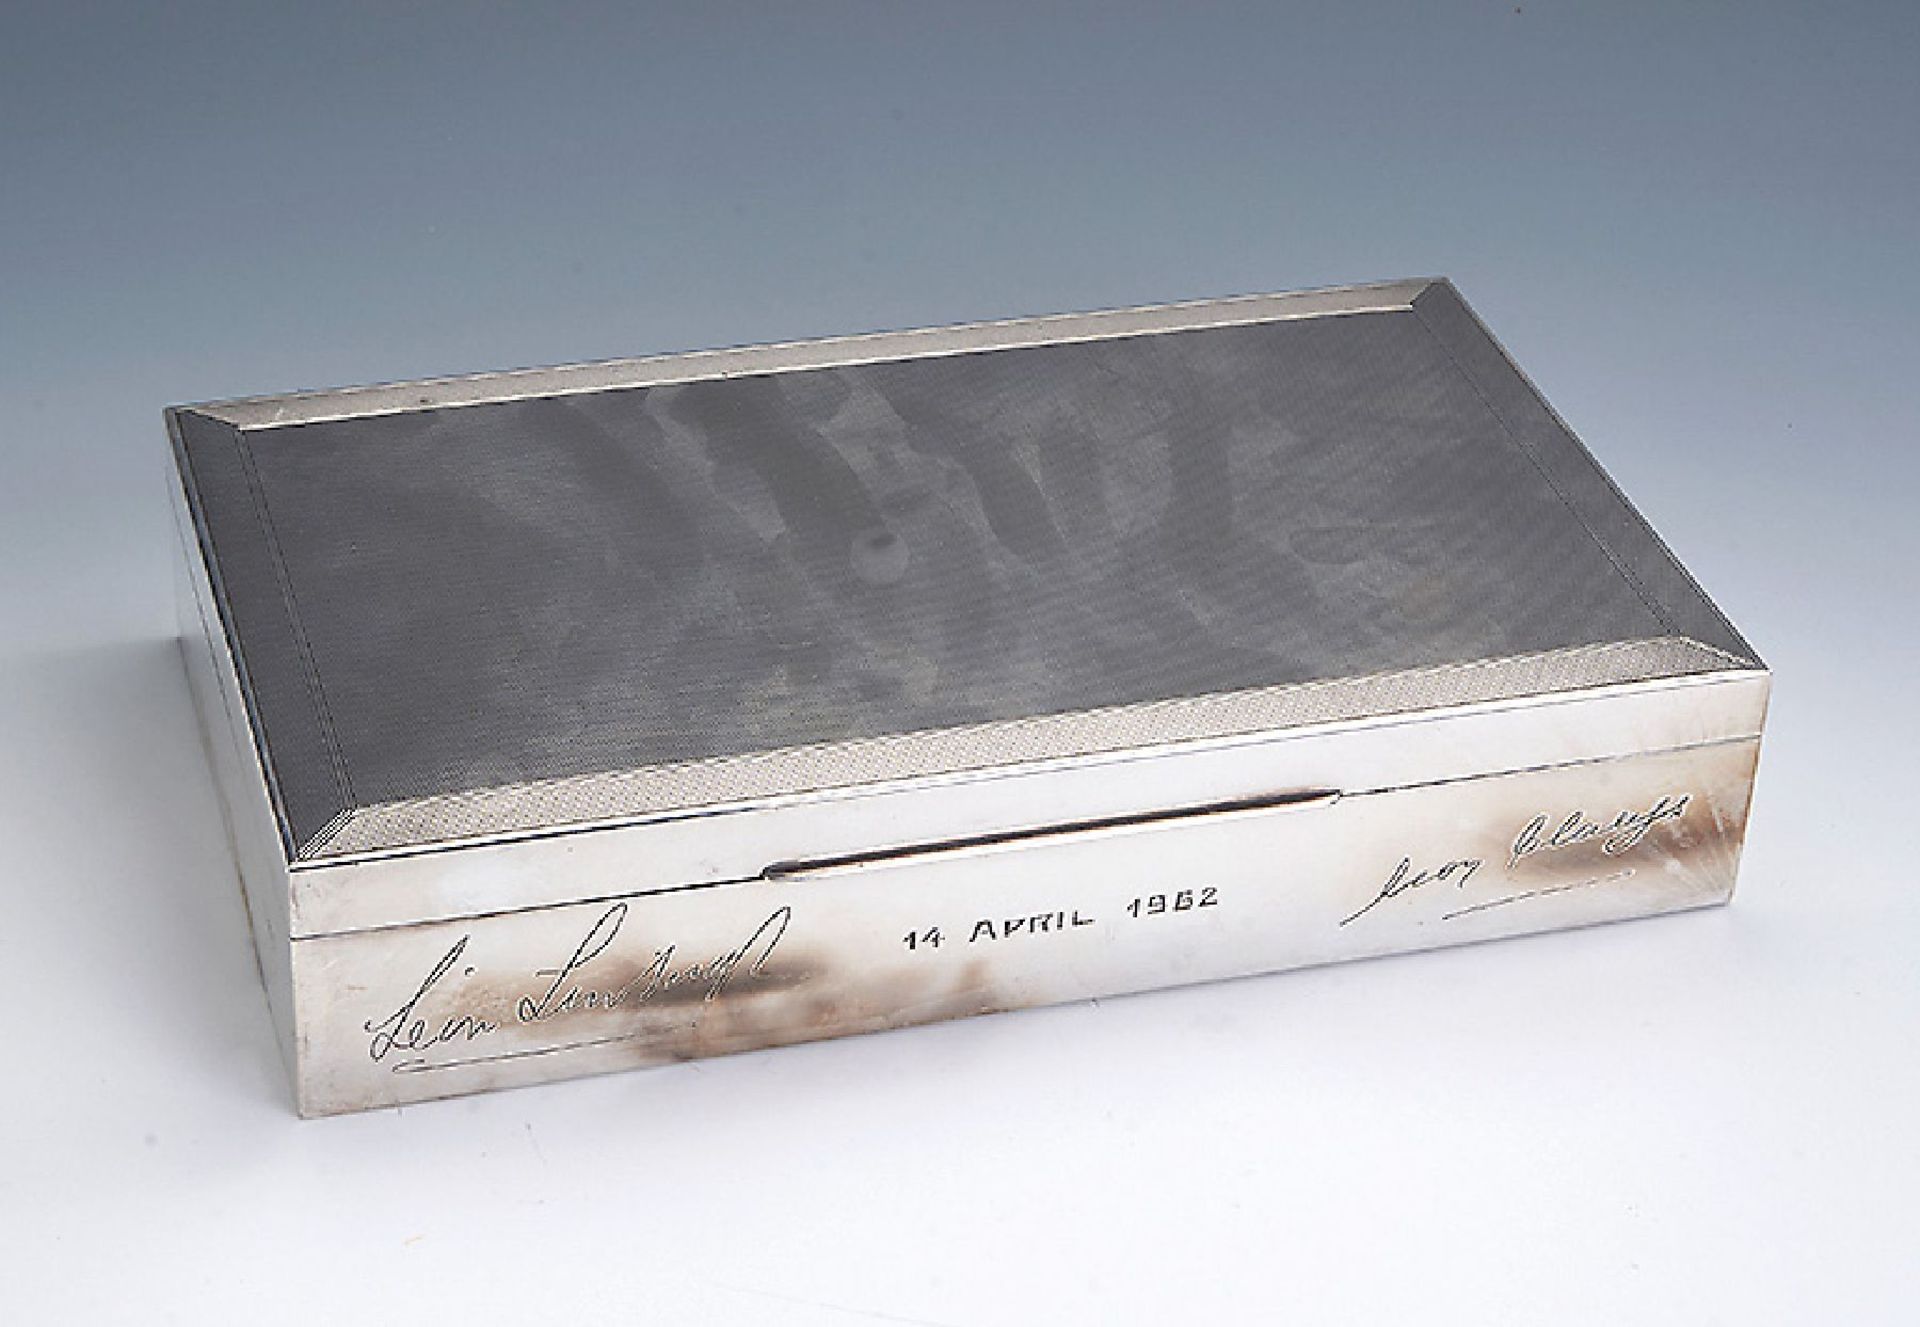 Zigarrenbox, 925er Silber, dat. 14.April 1962 mit 2